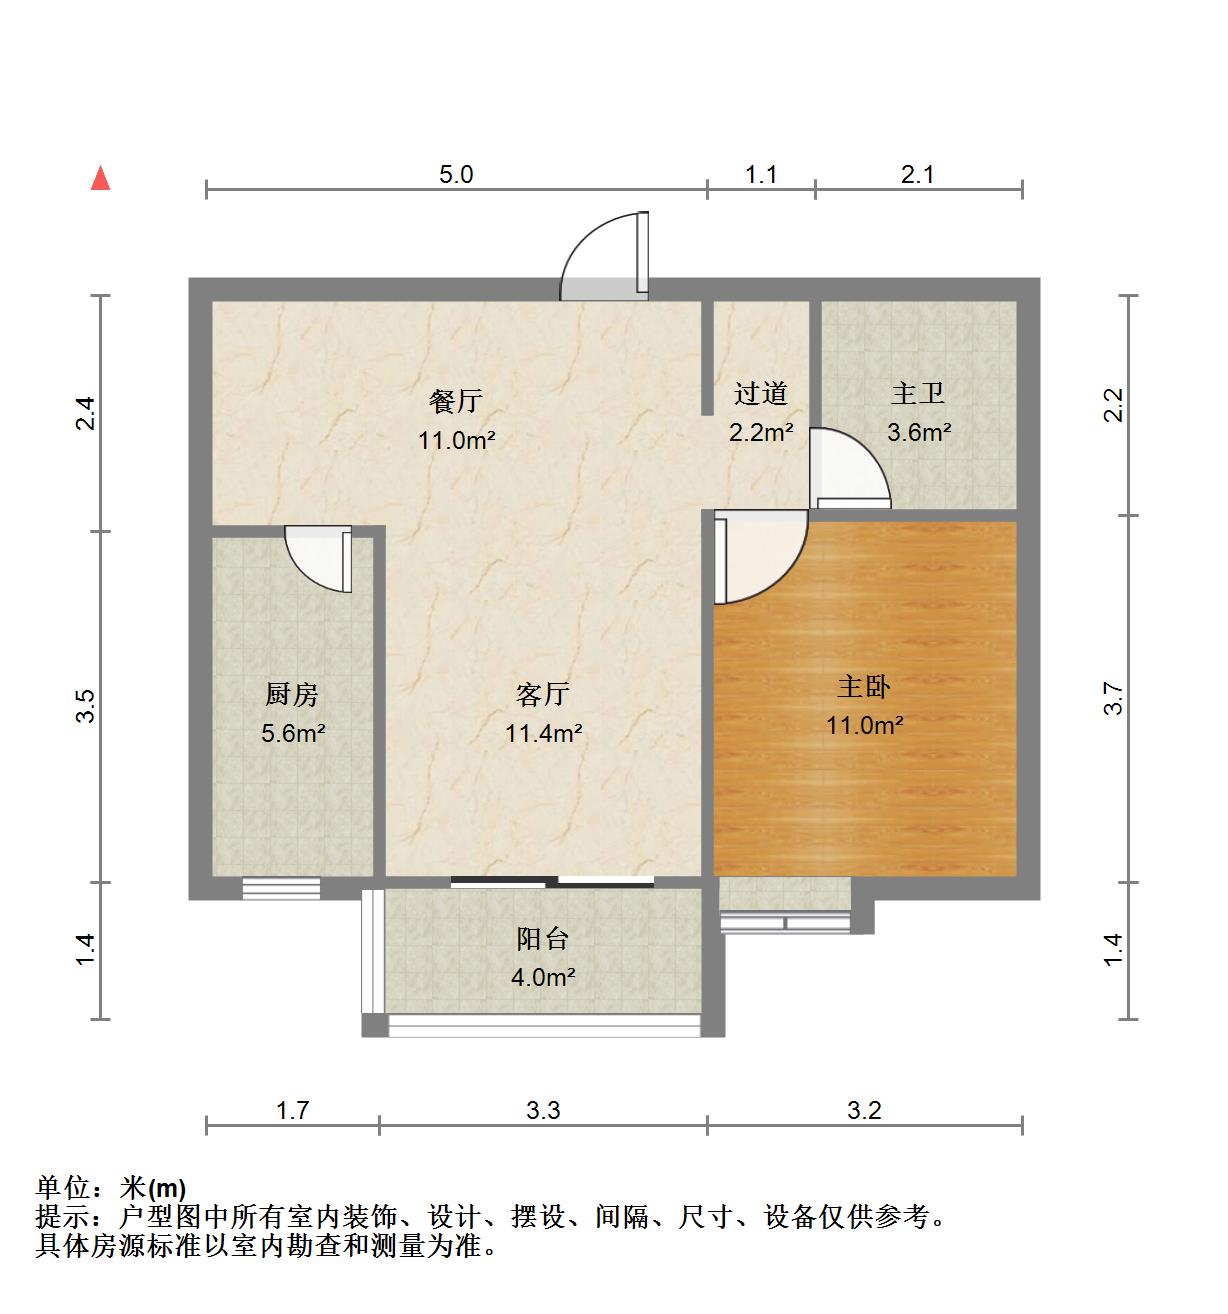 泛悦城,3室2厅2卫2阳台140㎡,阔绰客厅,超大阳台10